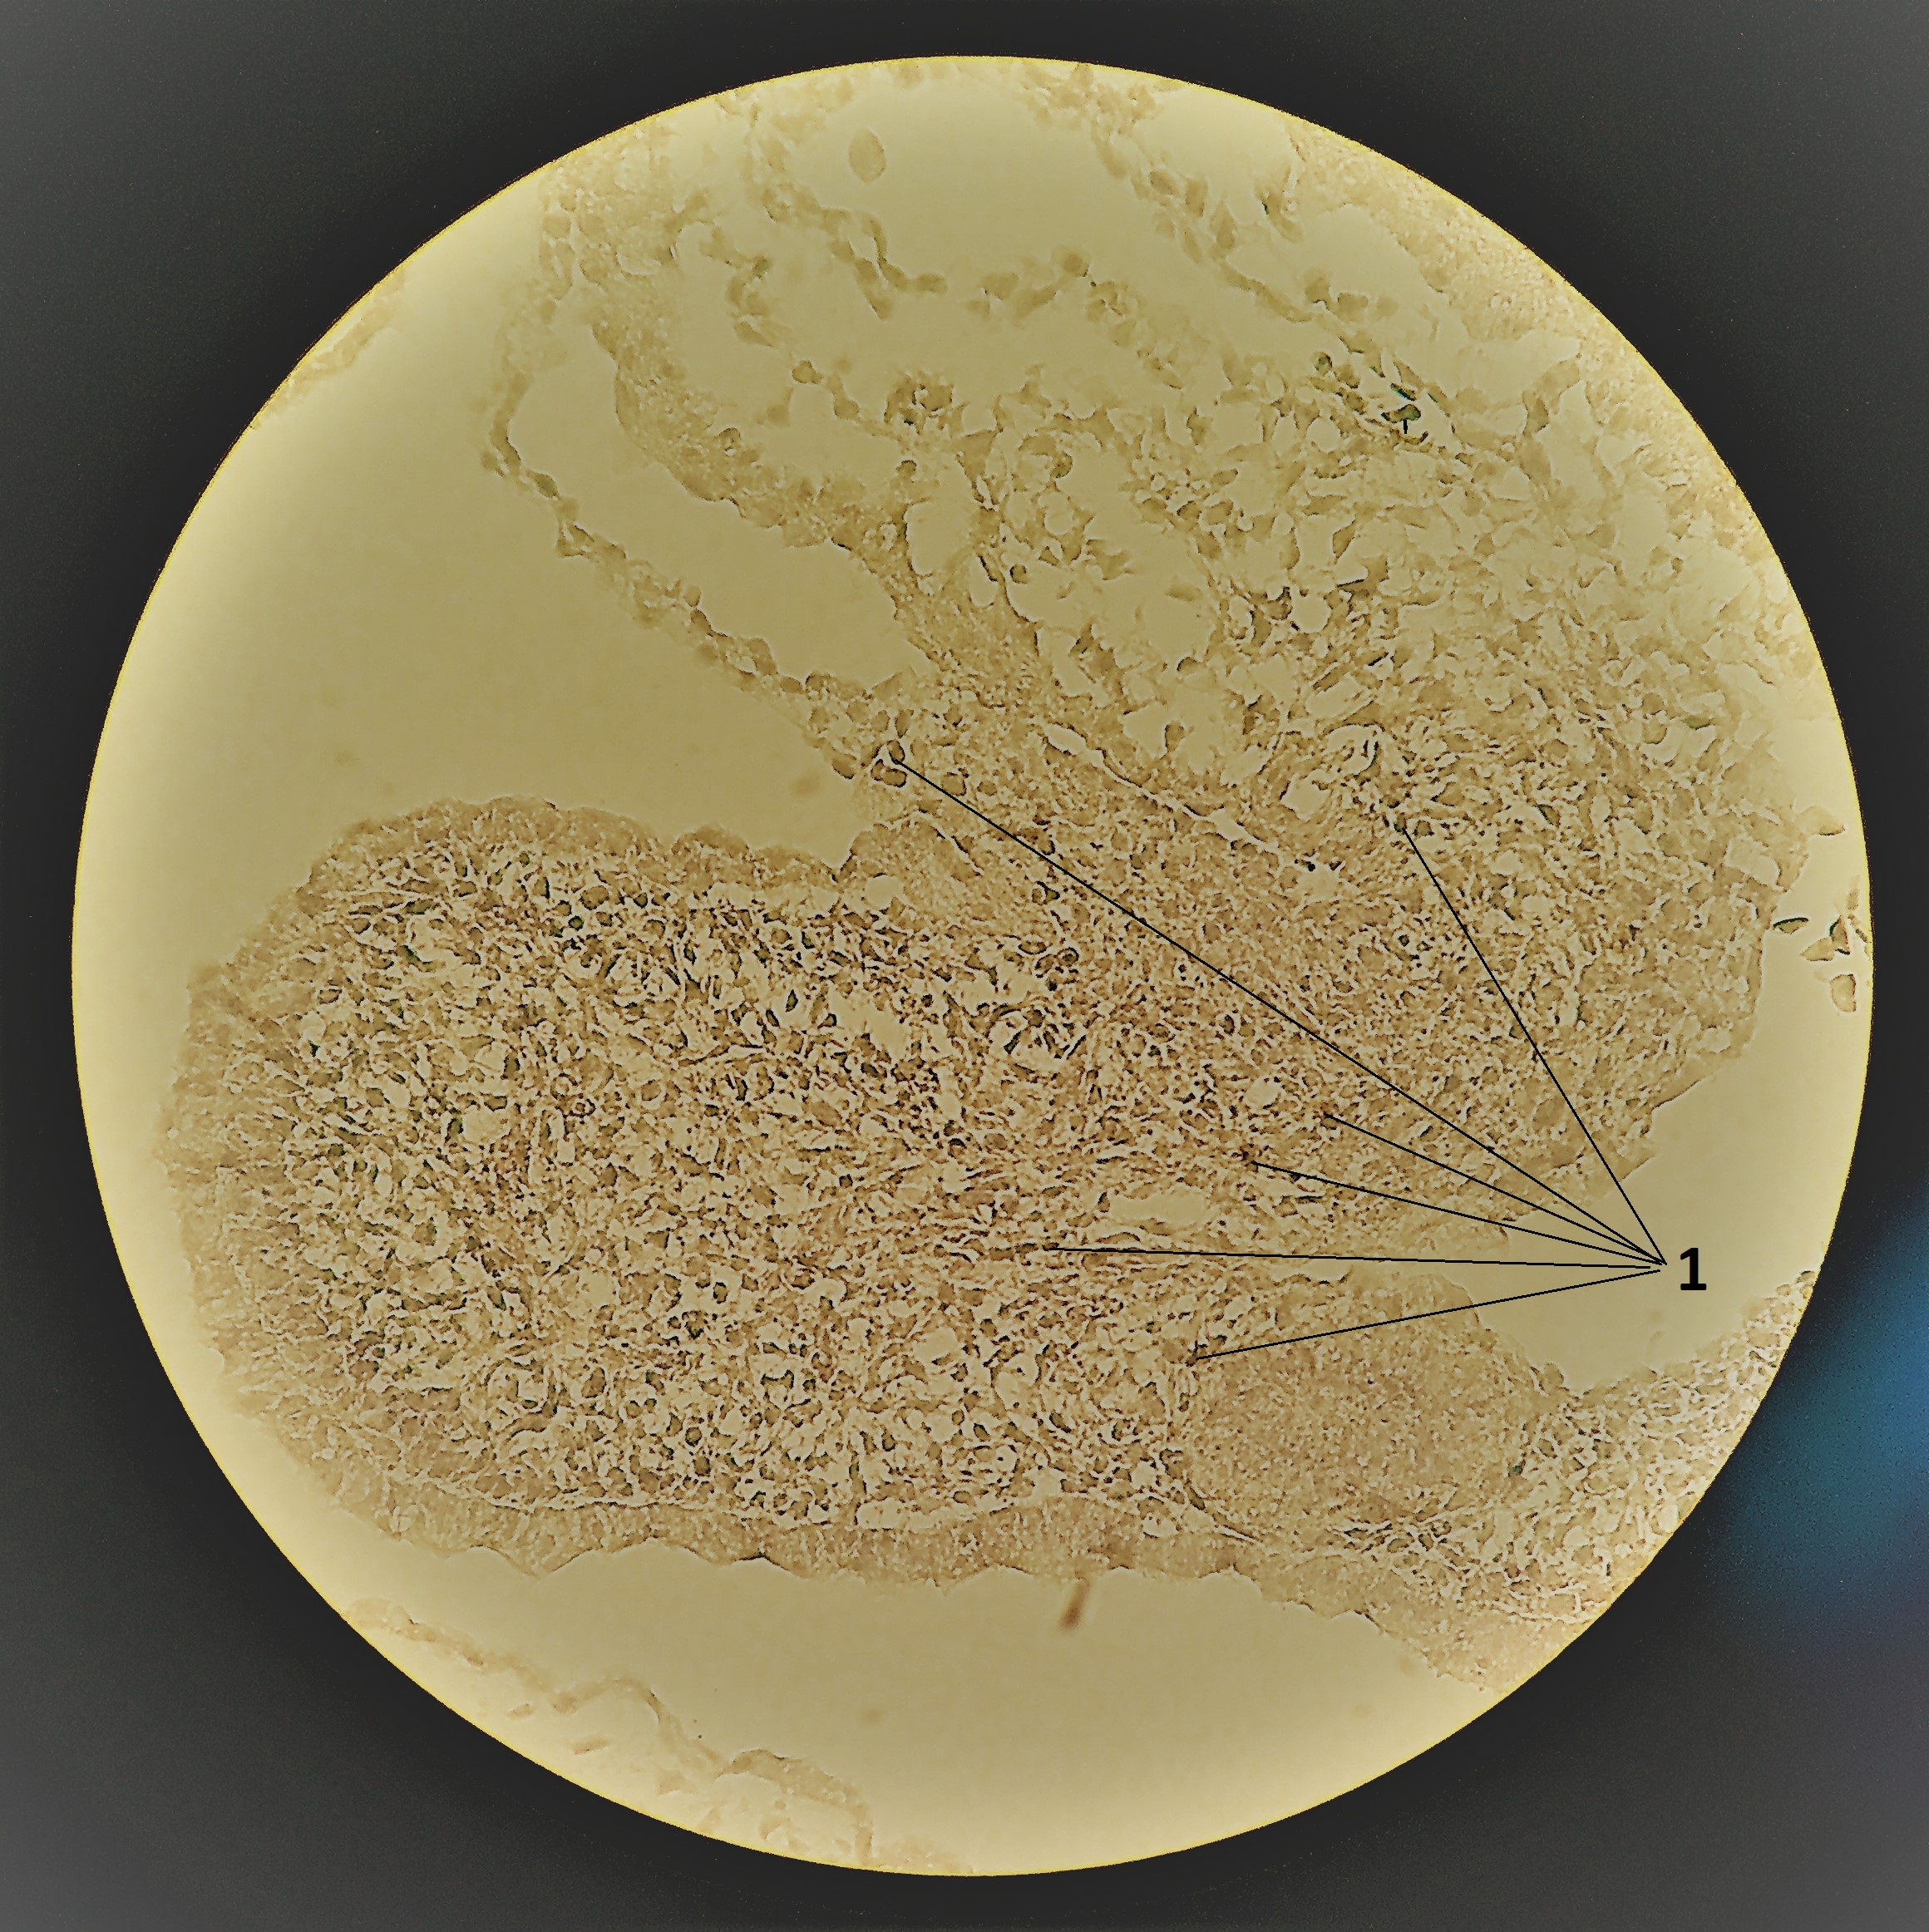 Компактный миокард куриного эмбриона:1 - малодифференцированные кардиомиоциты на различных стадиях апоптотической гибели